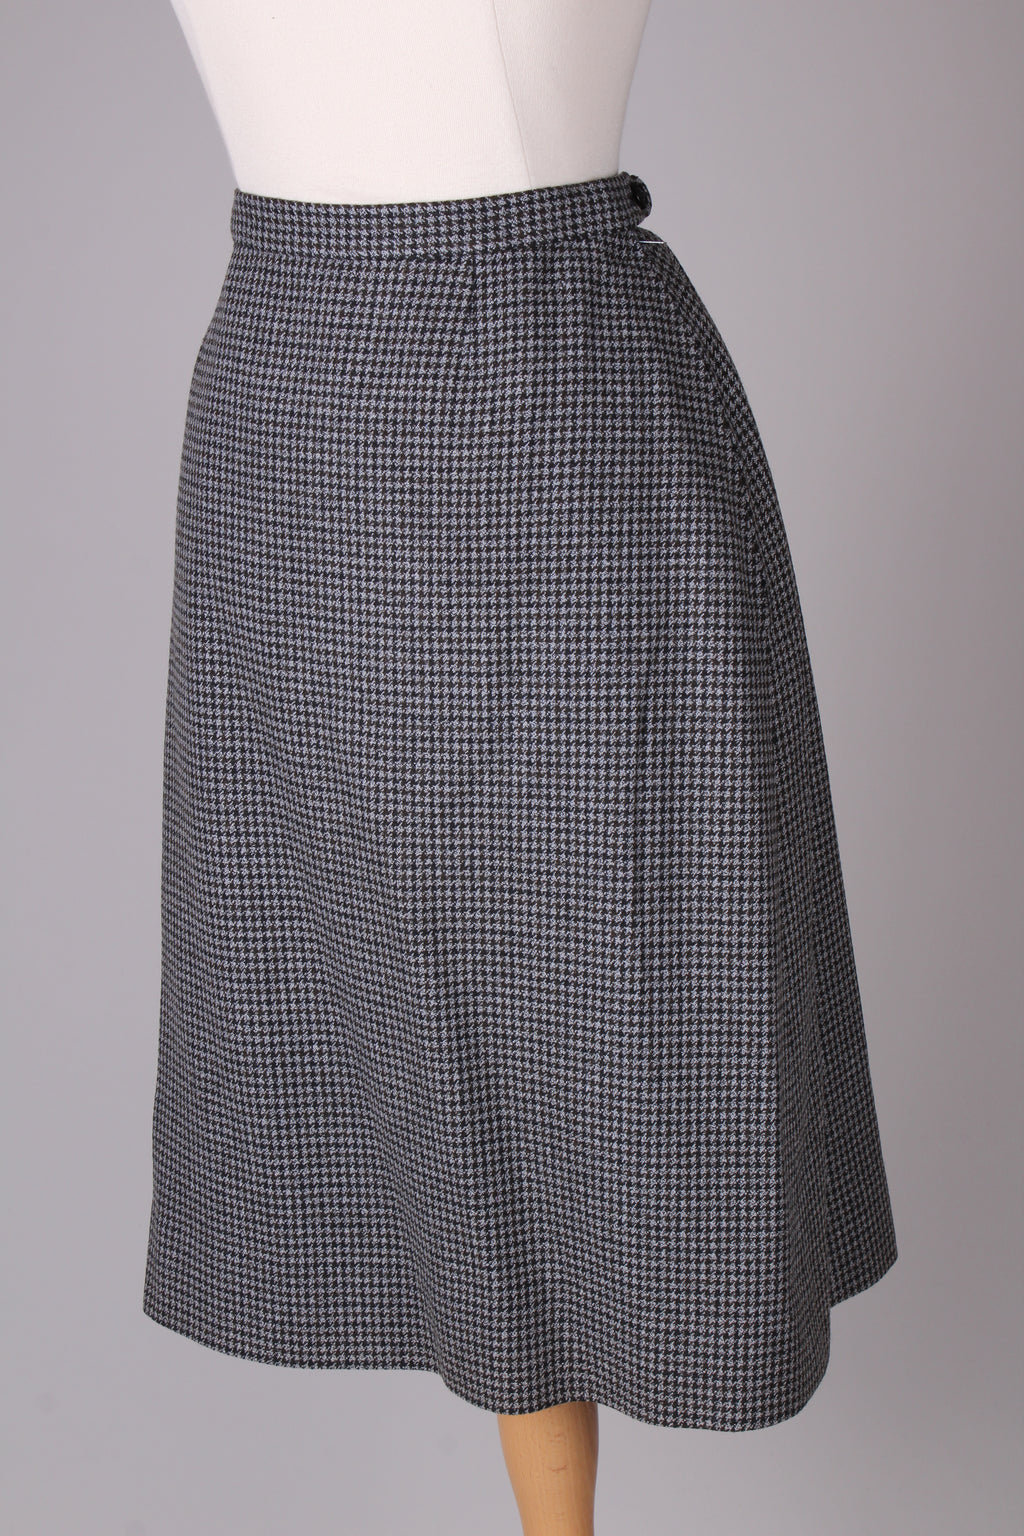 Pepitaternet nederdel, skræddersyet. 1960. Xs